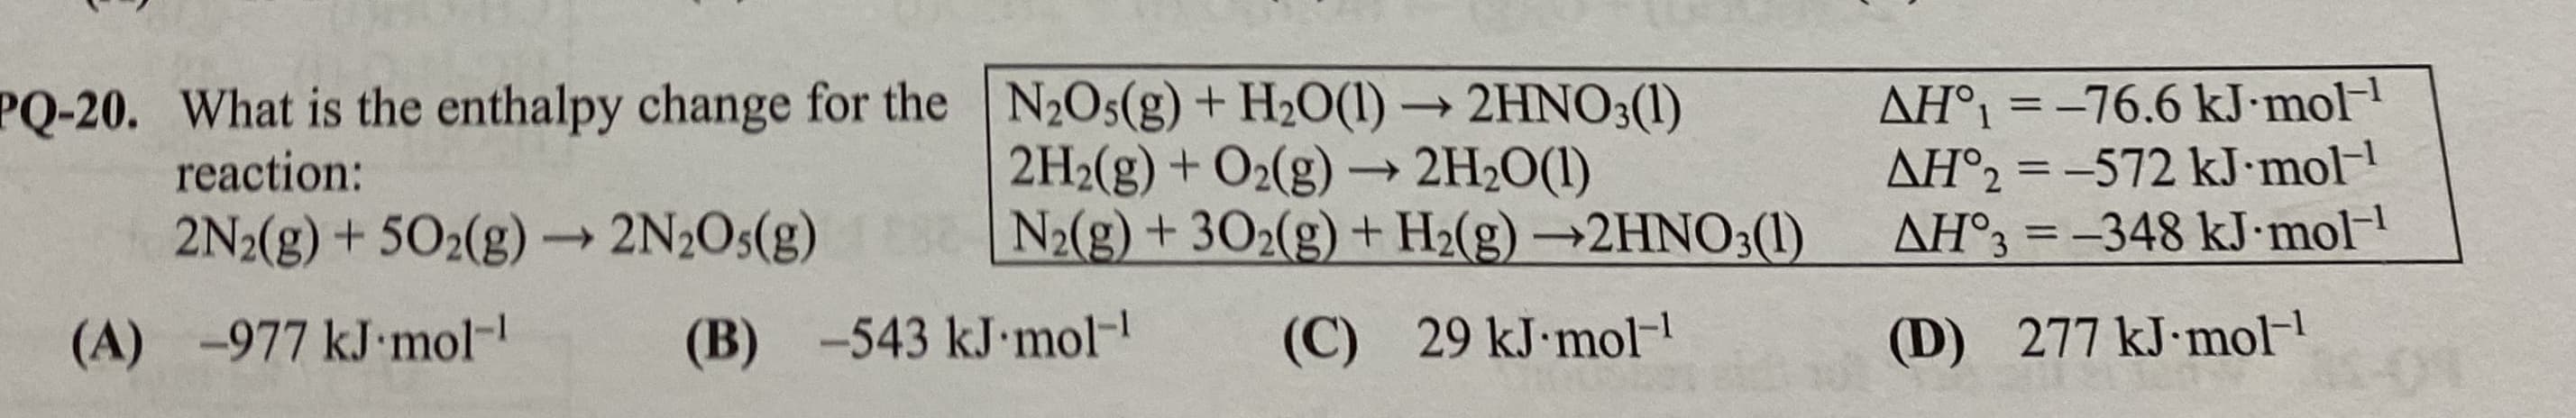 AH°1 = -76.6 kJ•mol
AH°2 = -572 kJ•mol
AH°3 = -348 kJ•mol-
PQ-20. What is the enthalpy change for the N2Os(g) + H2O(1) → 2HNO;(1)
2H2(g) + O2(g) → 2H2O(1)
N2(g) + 302(g) + H2(g) →2HNO3(1)
reaction:
%3D
2N2(g) + 502(g) 2N2O5(g)
->
-977 kJ mol-
(B) -543 kJ mol-
277 kJ mol-
29 kJ mol-
(C)
(D)
(A)
